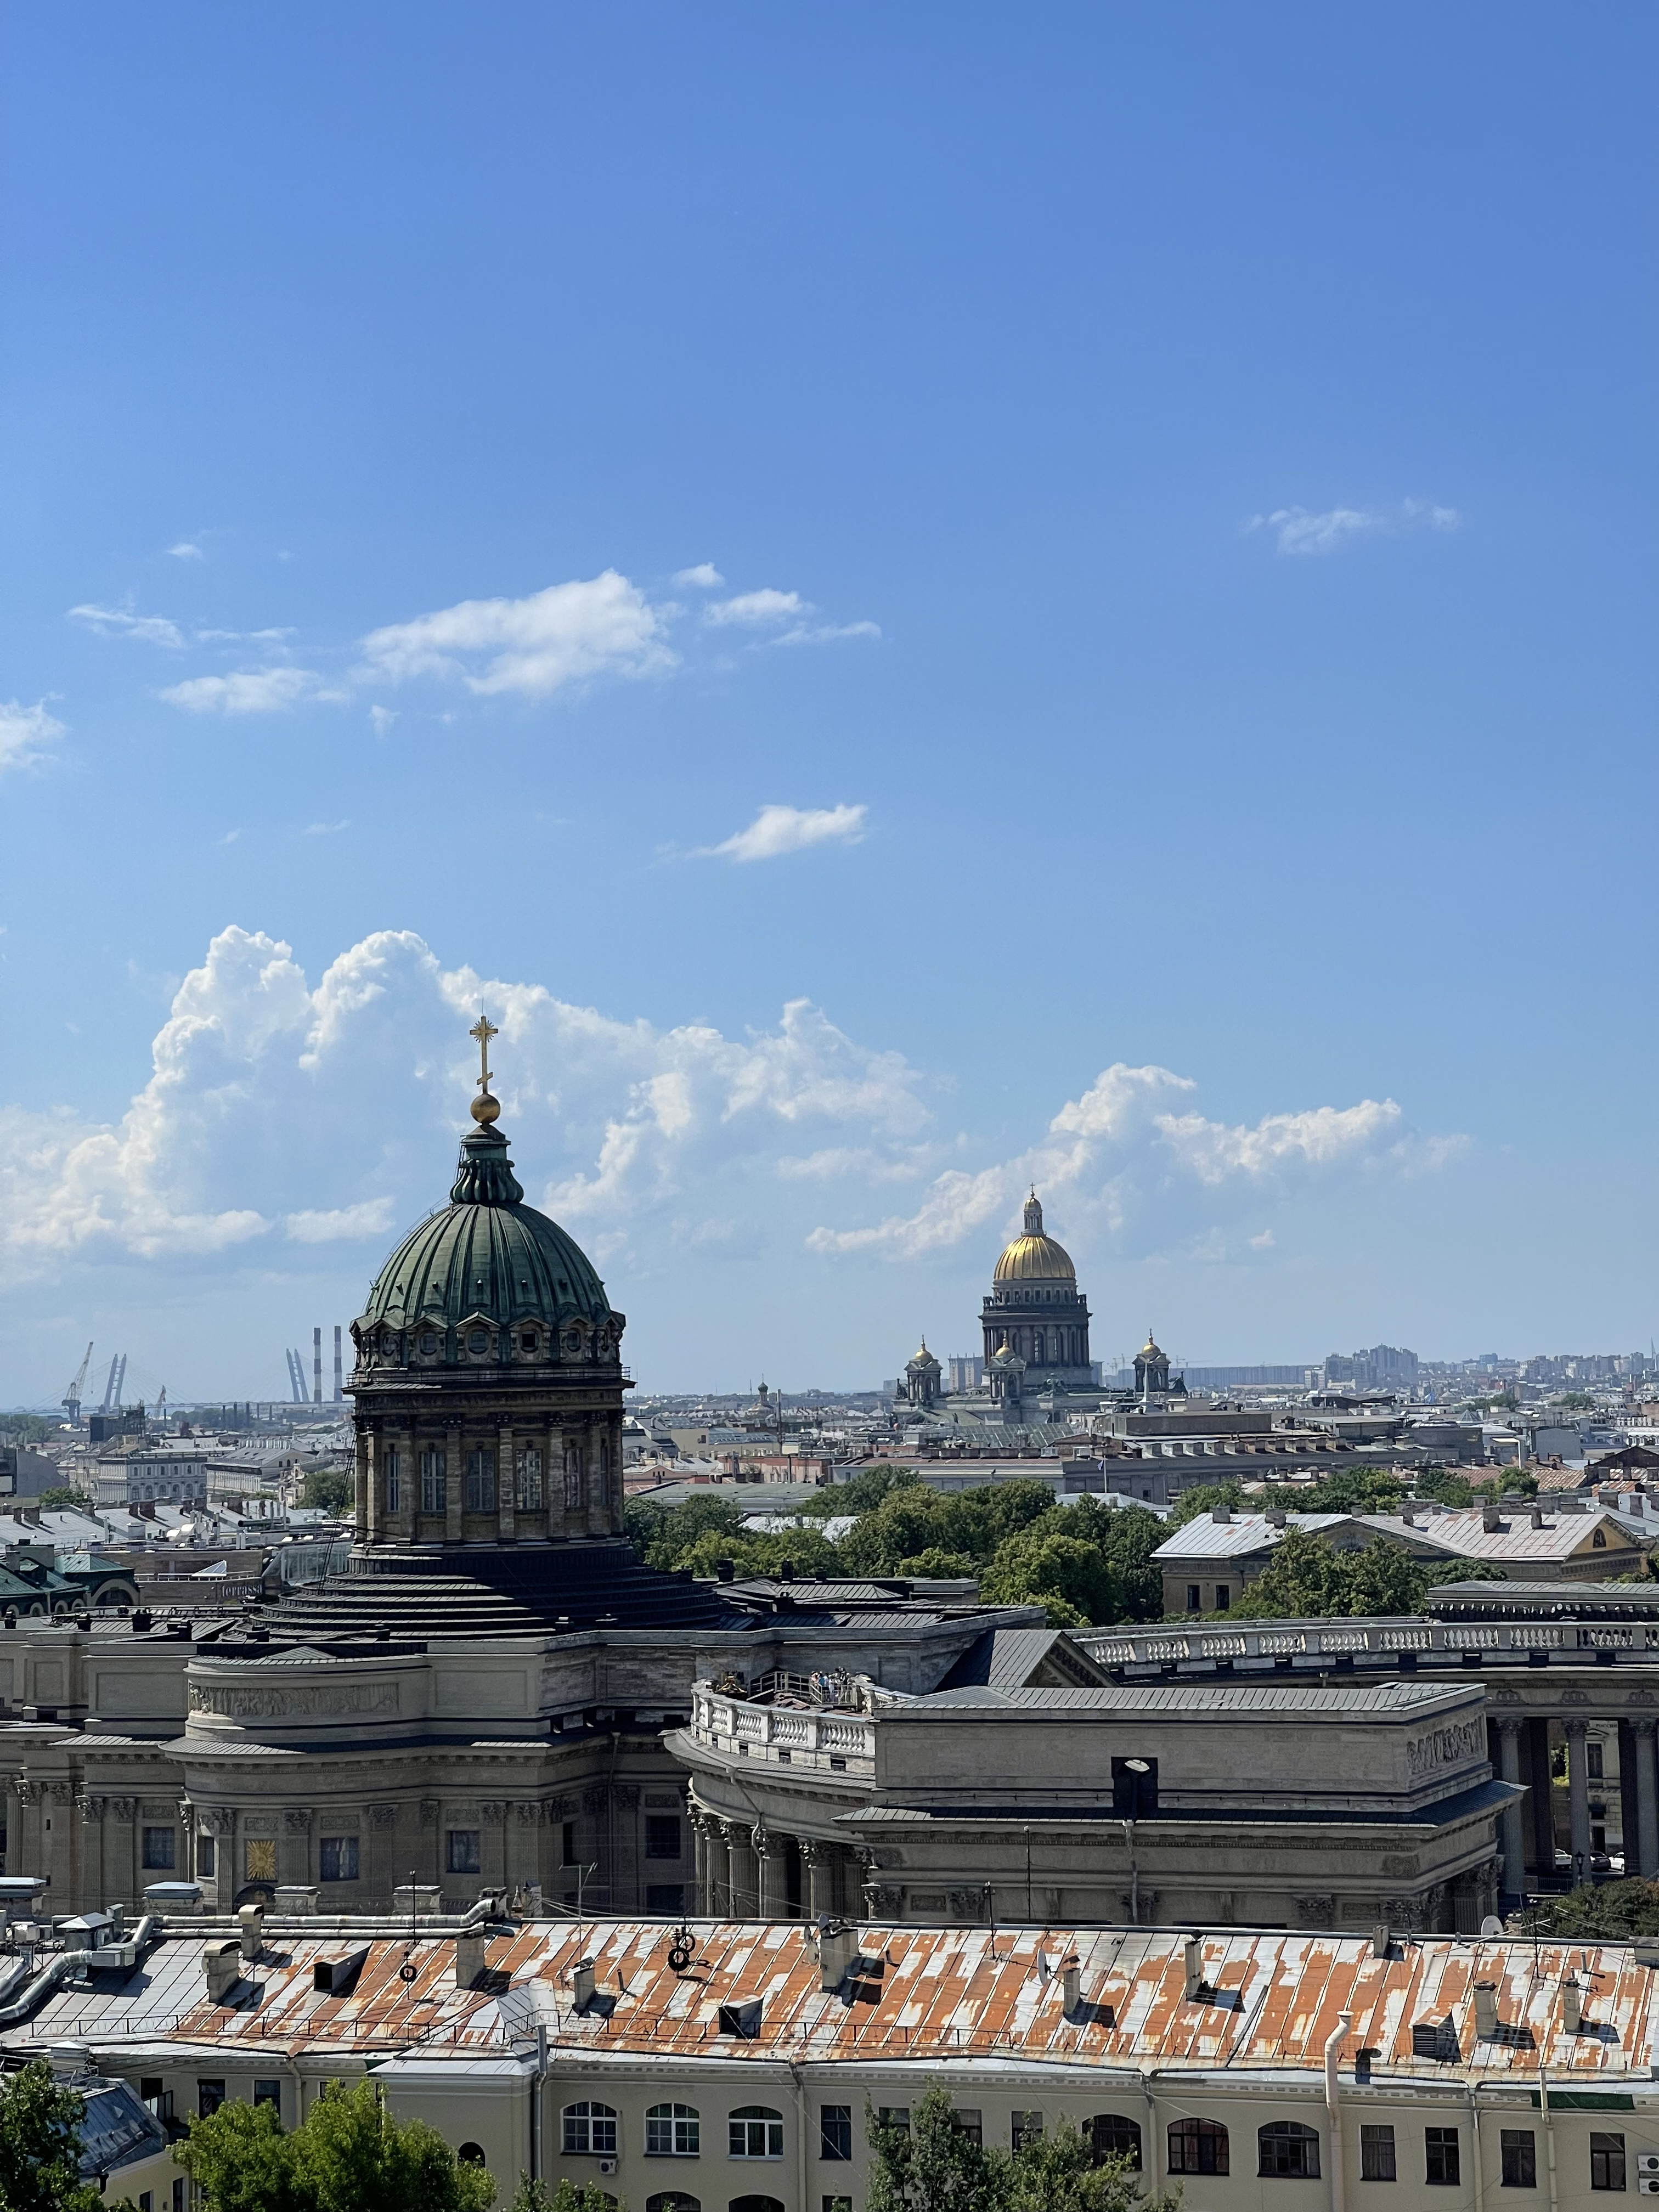 Санкт-Петербург вошел в межрегиональный интерактивный «гайд» проекта «От рассвета до заката»